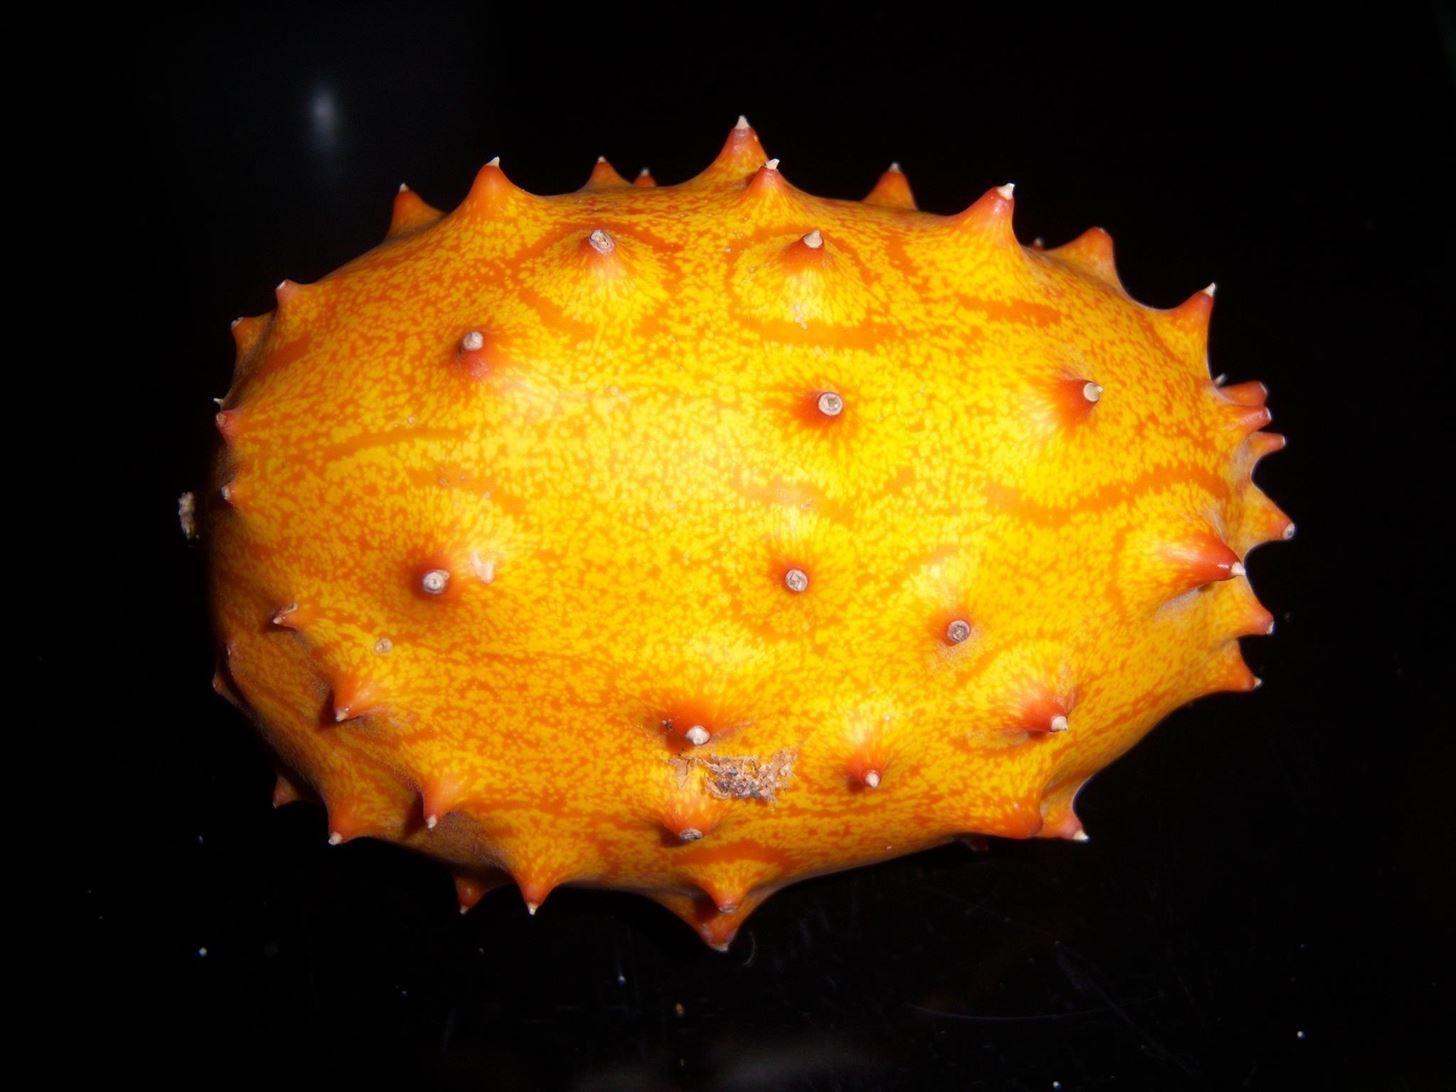 Weird Ingredient Wednesday: The Alien Melon from Star Trek